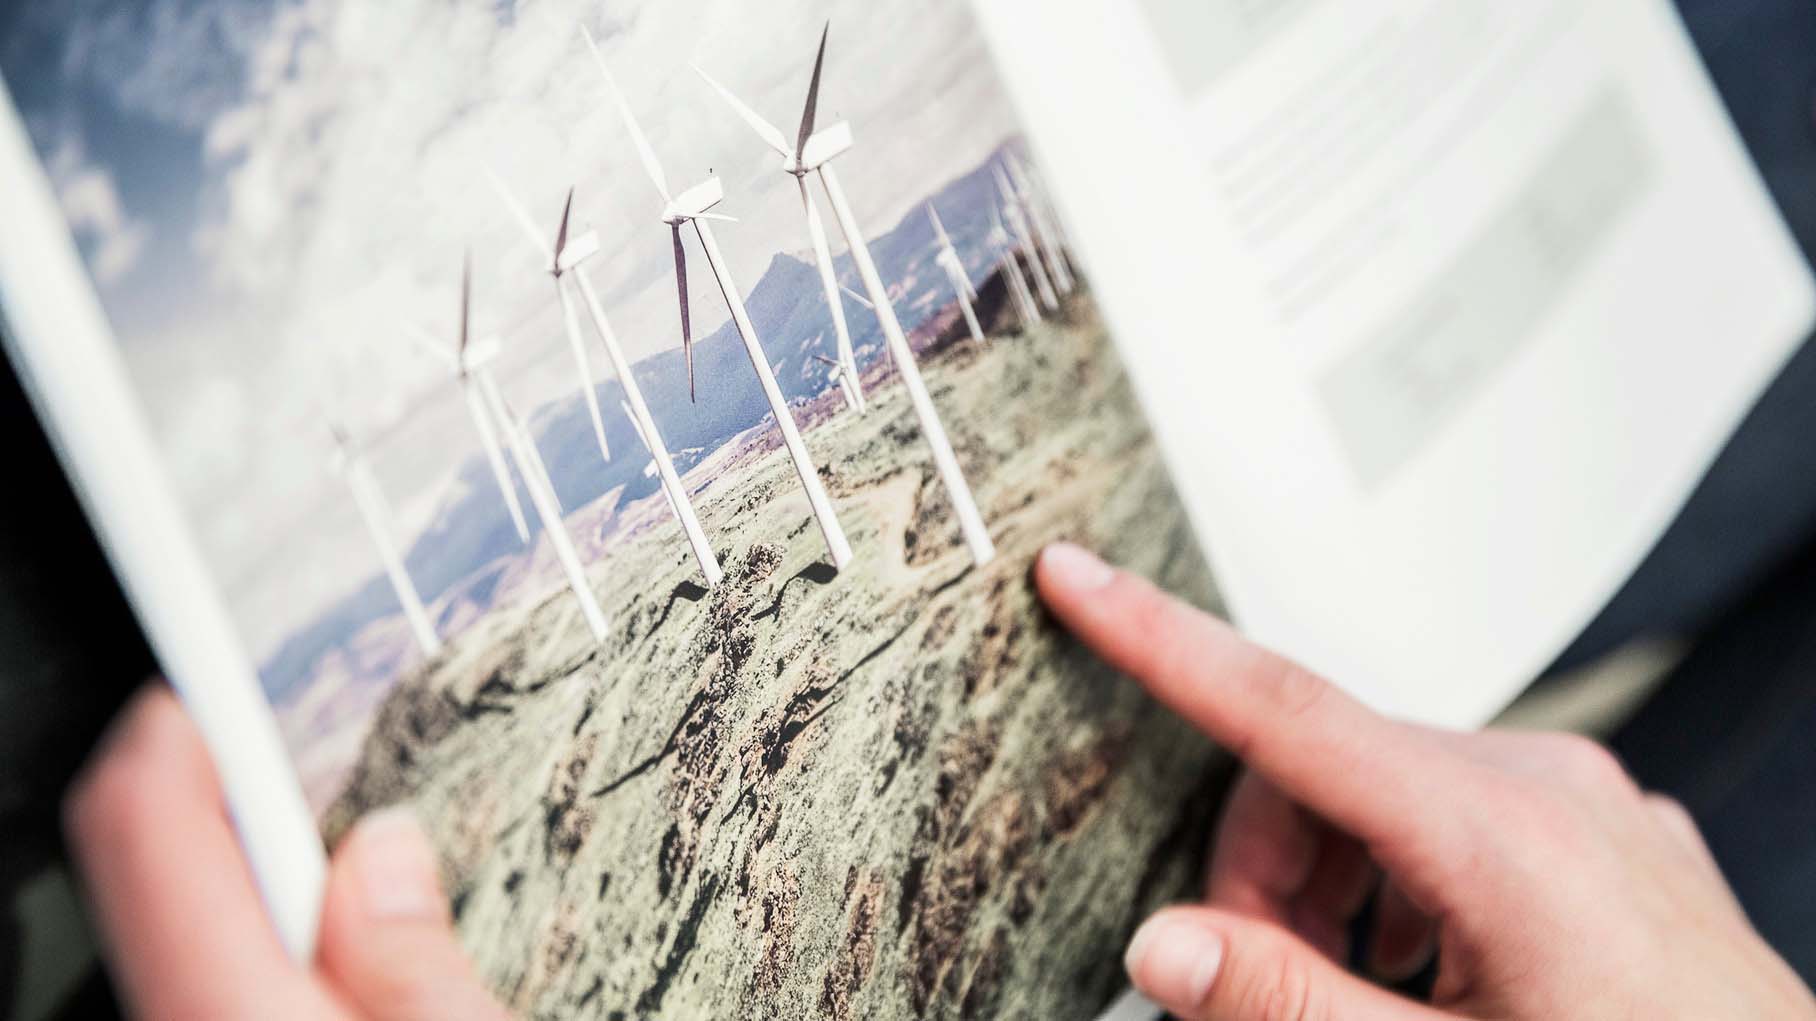 Uppslagen katalog med bild på flera vindkraftverk som står på ett fält. En hand som pekar på bilden.